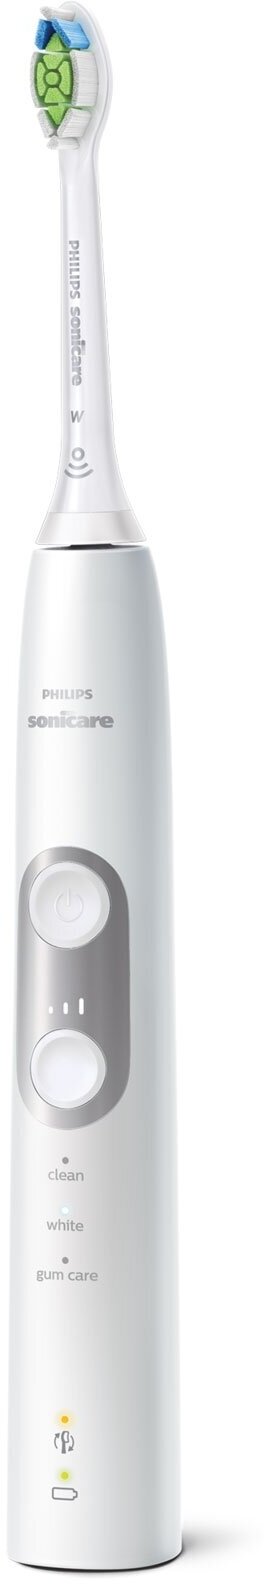 Электрическая зубная щетка + компактный ирригатор Philips - фото №6